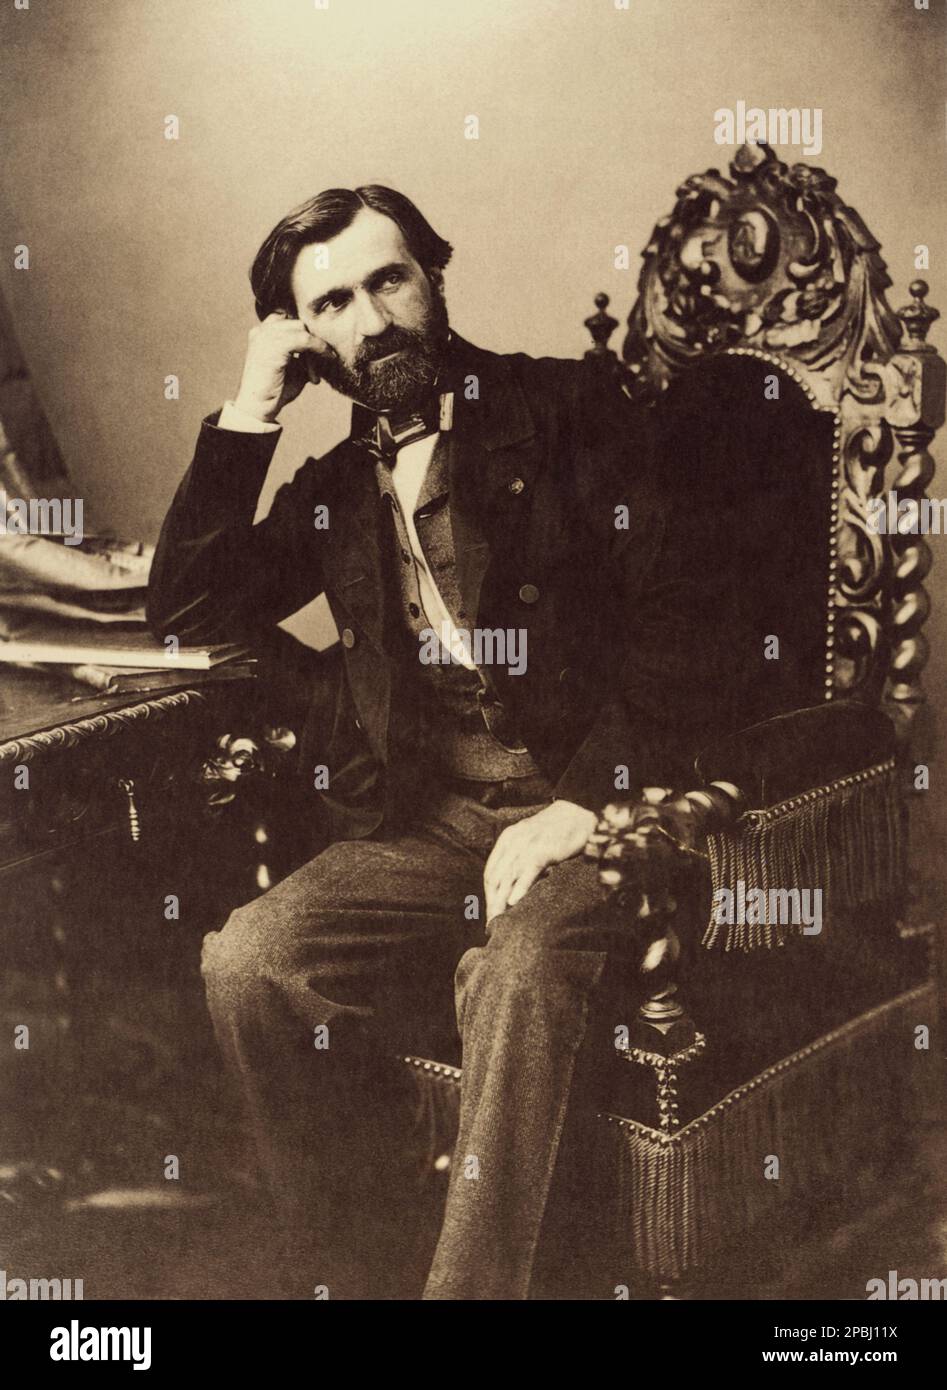 1859 , Parigi , Francia : il celebre compositore italiano GIUSEPPE VERDI ( 1813 - 1901 ). FOTO DI E. DIDERI - COMPOSITORE - OPERA LIRICA - CLASSICA - CLASSICA - RITRATTO - RITRATTO - MUSICALE - MUSICA - BARBA - BARBA - BARBA - FIOCCO - FIOCCO - CRAVATTA - CRAVATTA - PAPILLON ------- ---- ARCHIVIO GBB Foto Stock